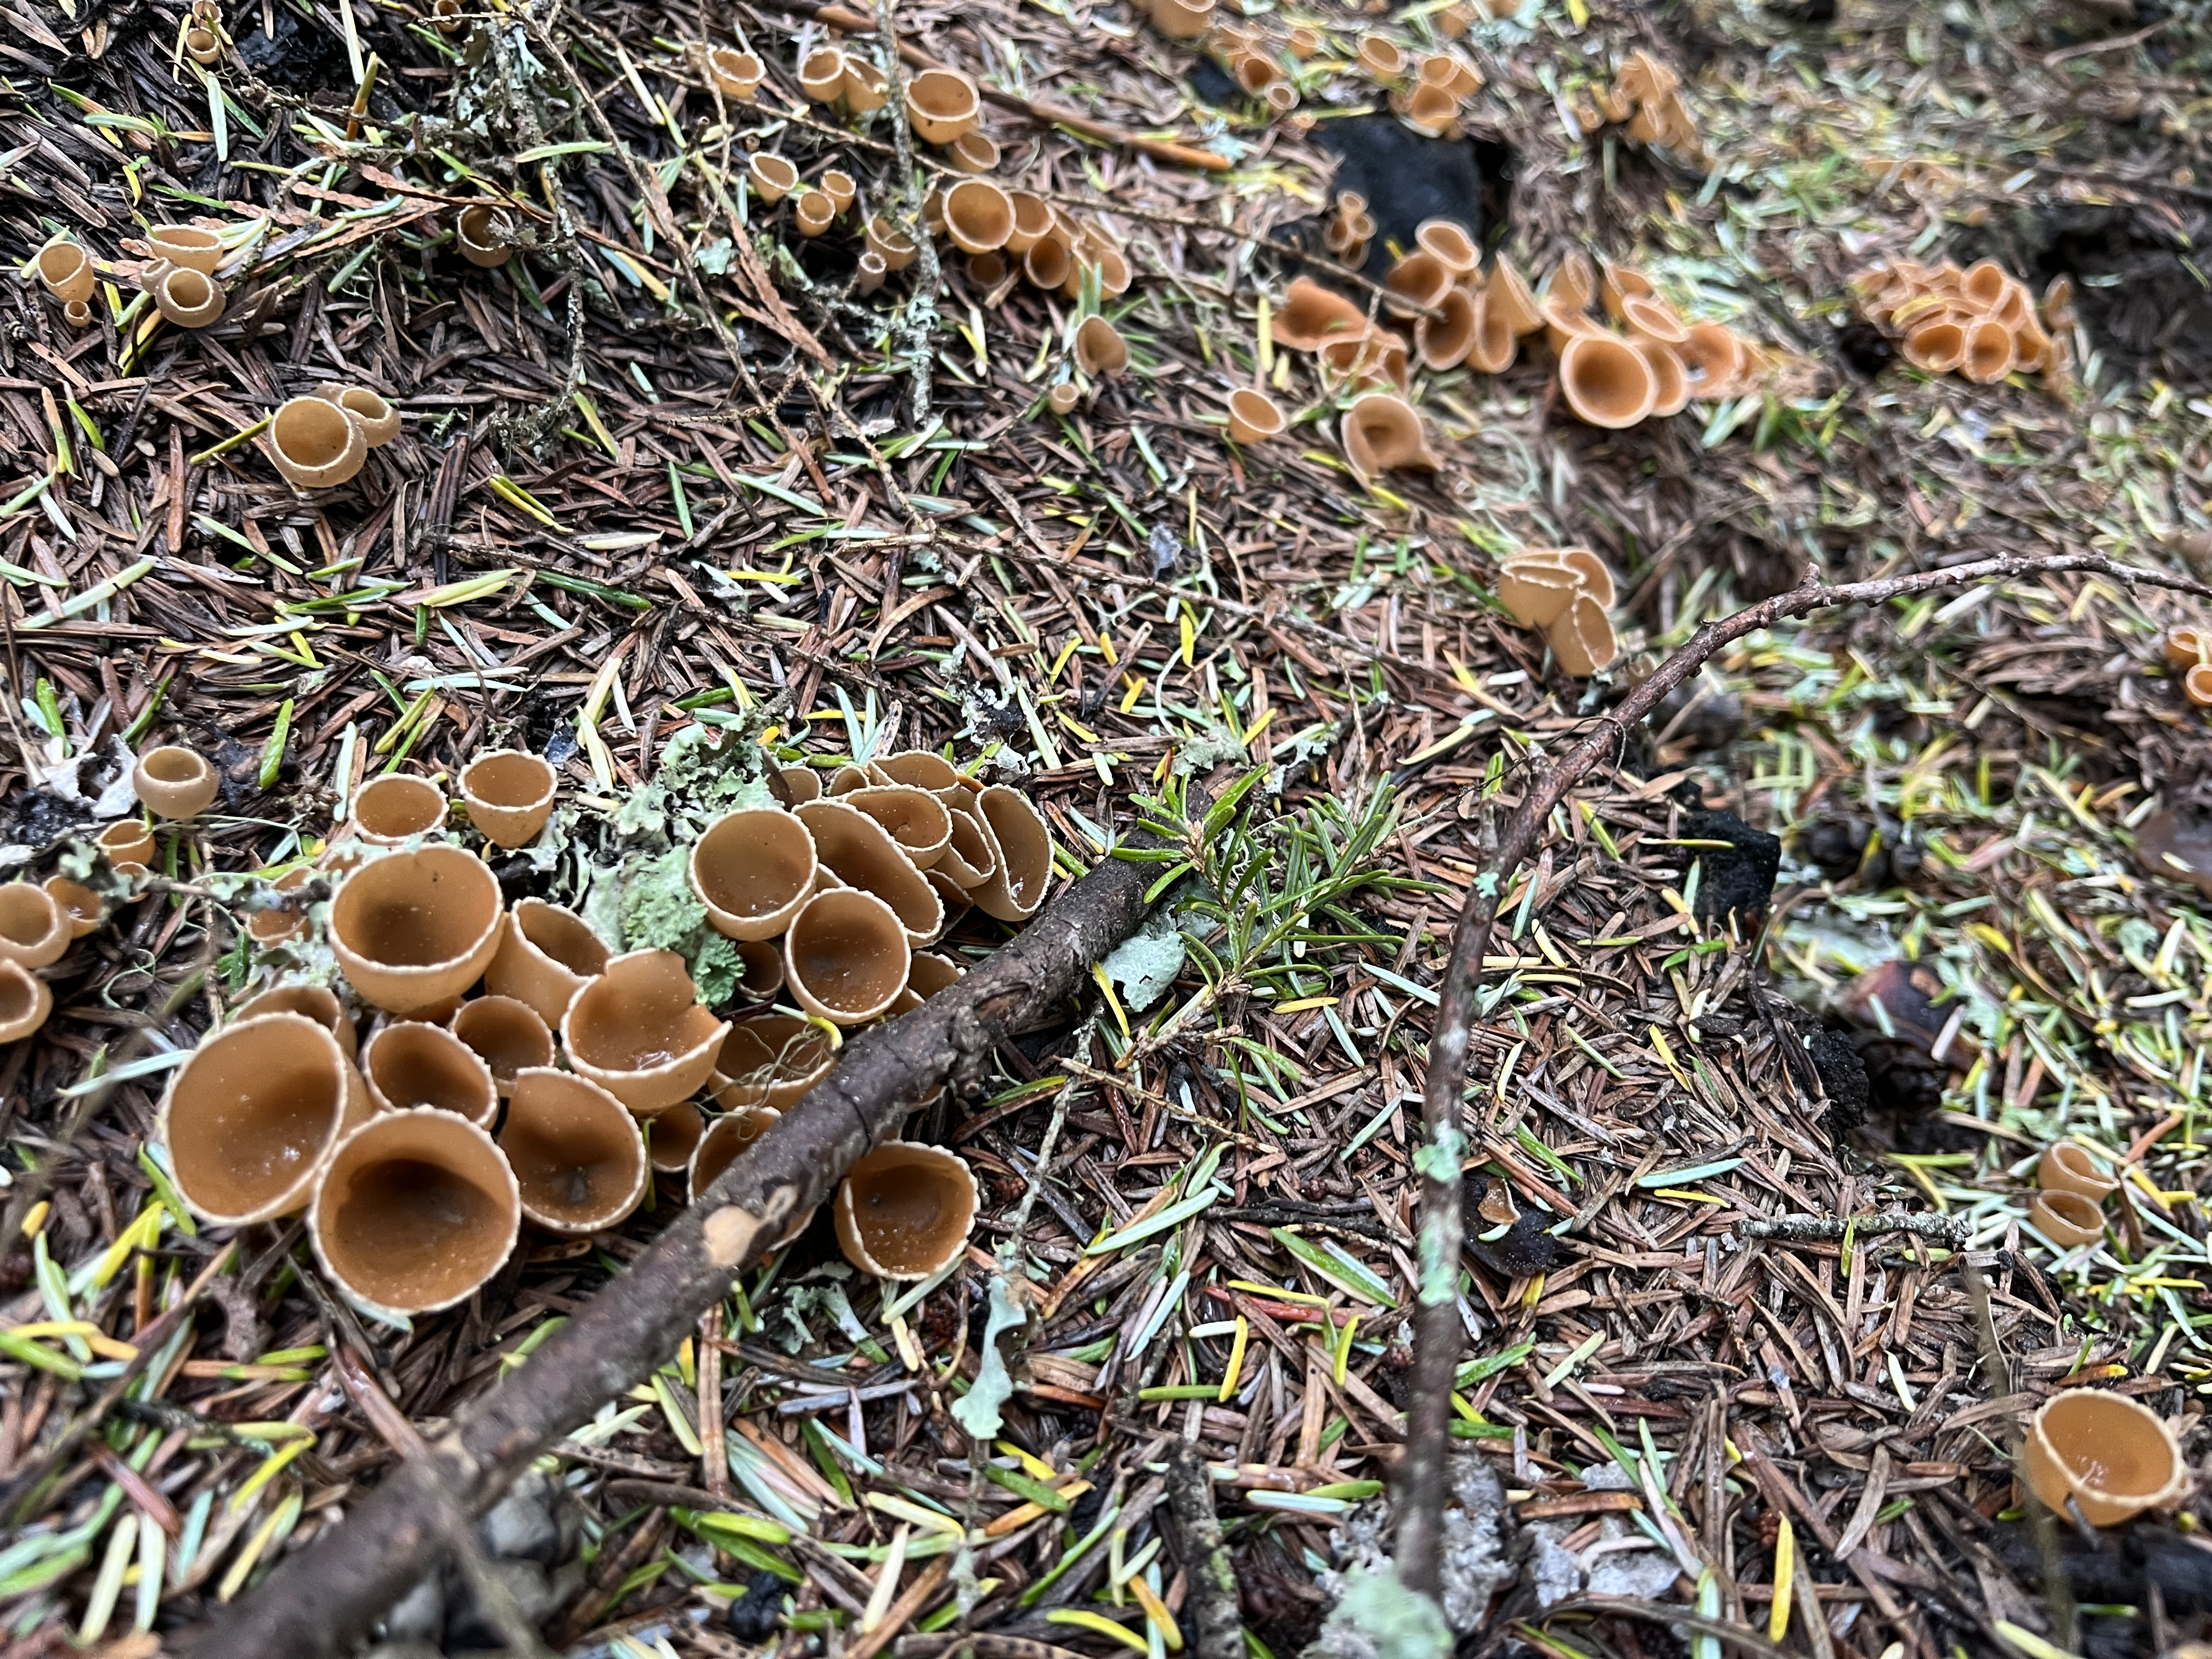 Cup mushrooms